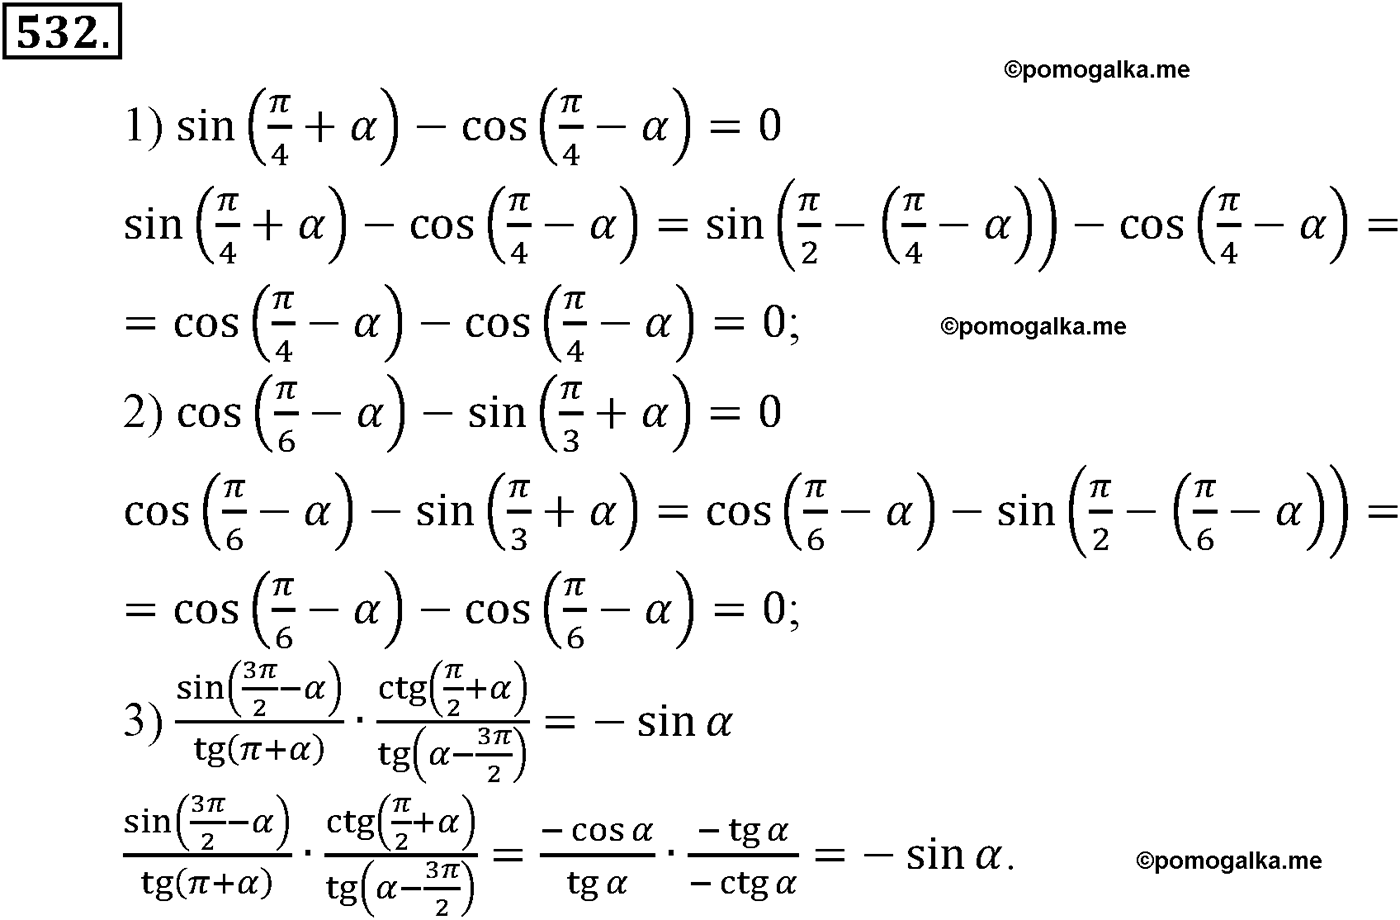 разбор задачи №532 по алгебре за 10-11 класс из учебника Алимова, Колягина